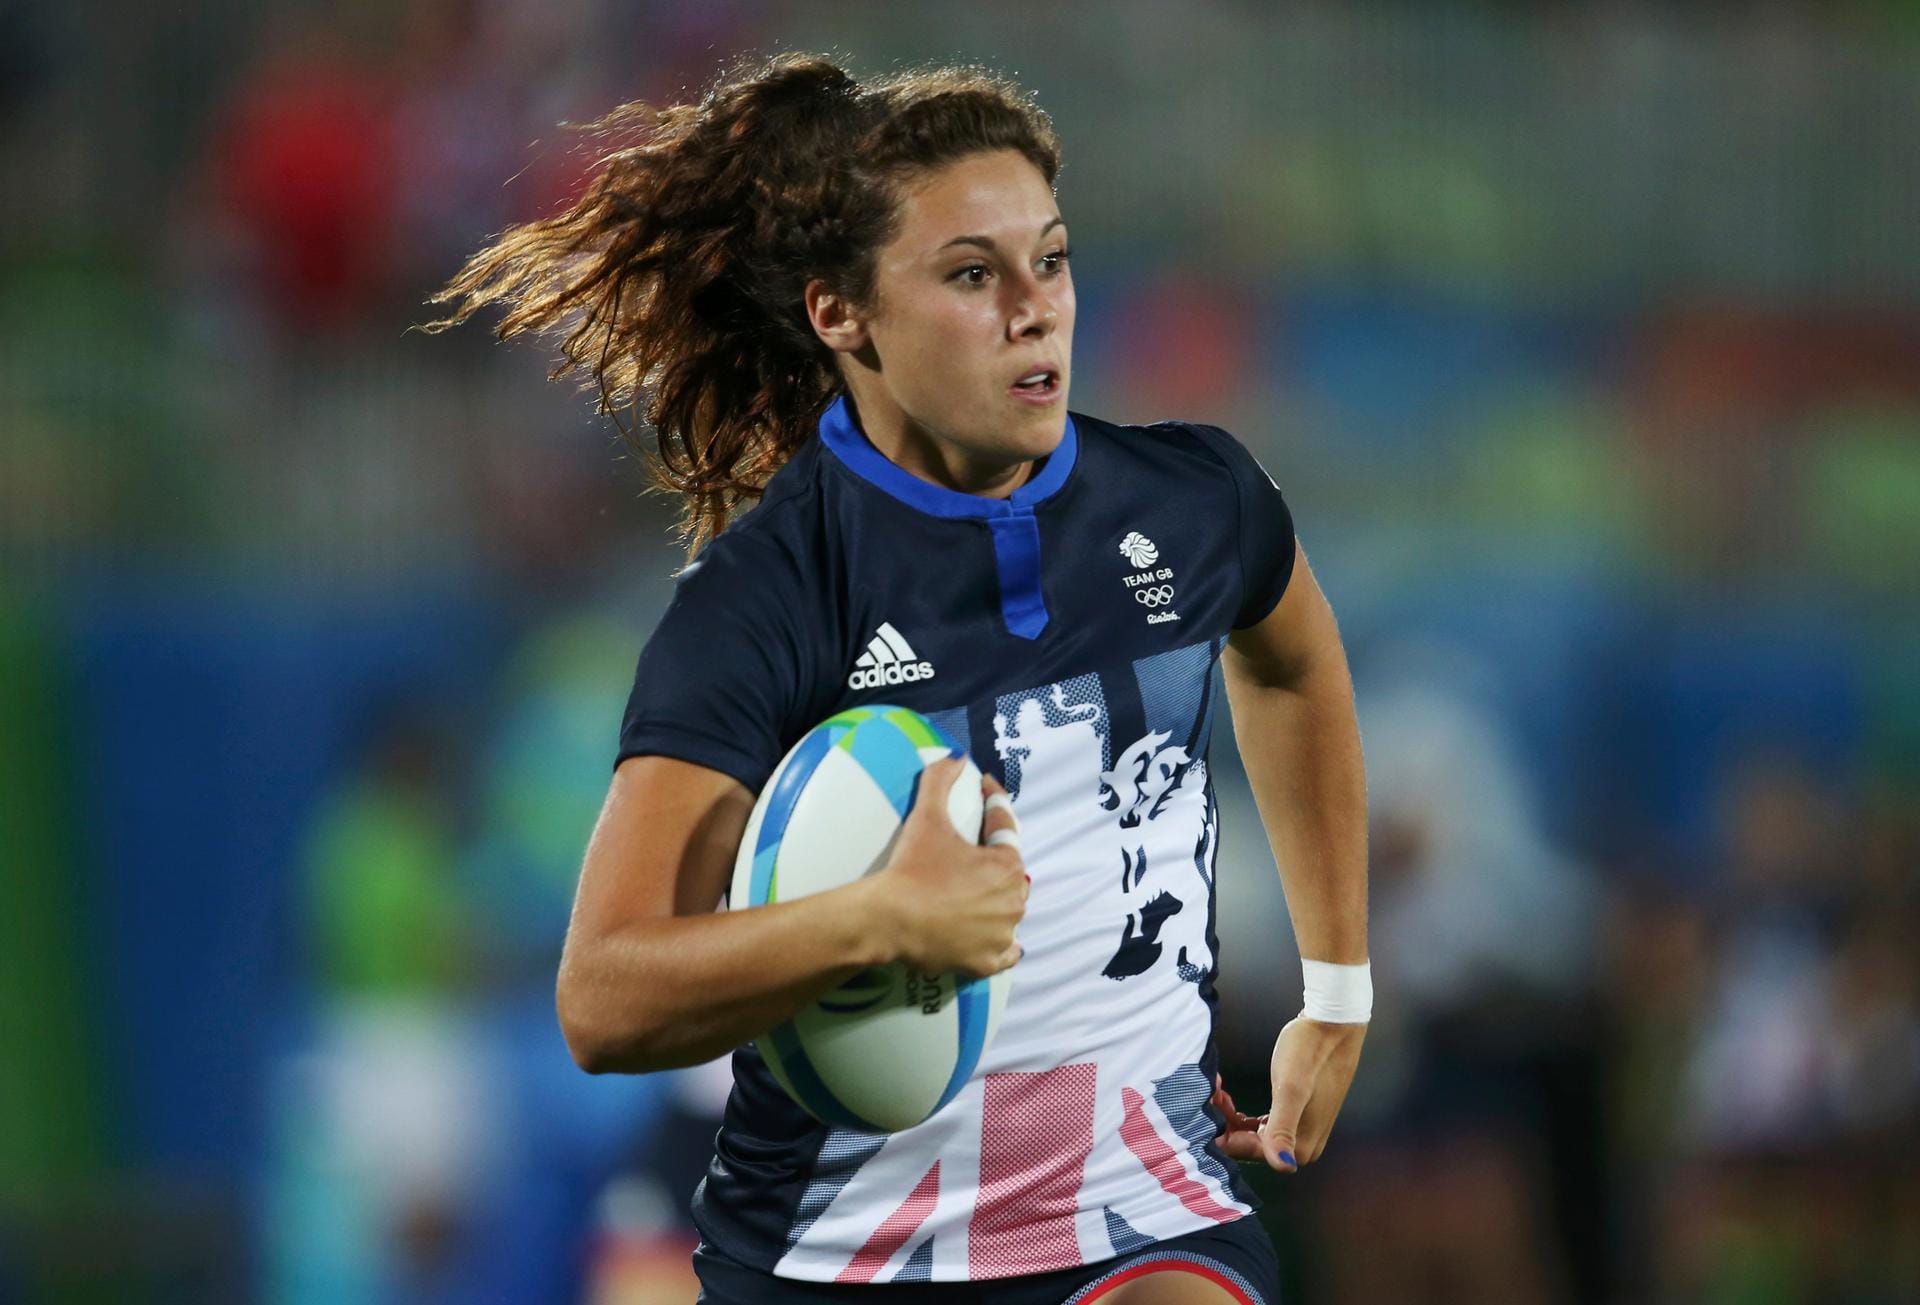 So schön kann Rugby sein: Die Britin Abigail Brown war auf dem Weg zu Punkten. Sie gewann die Partie gegen den Inselstaat Fidschi mit ihrem Team schließlich 26:7. Damit steht Großbritannien im Halbfinale gegen Neuseeland.